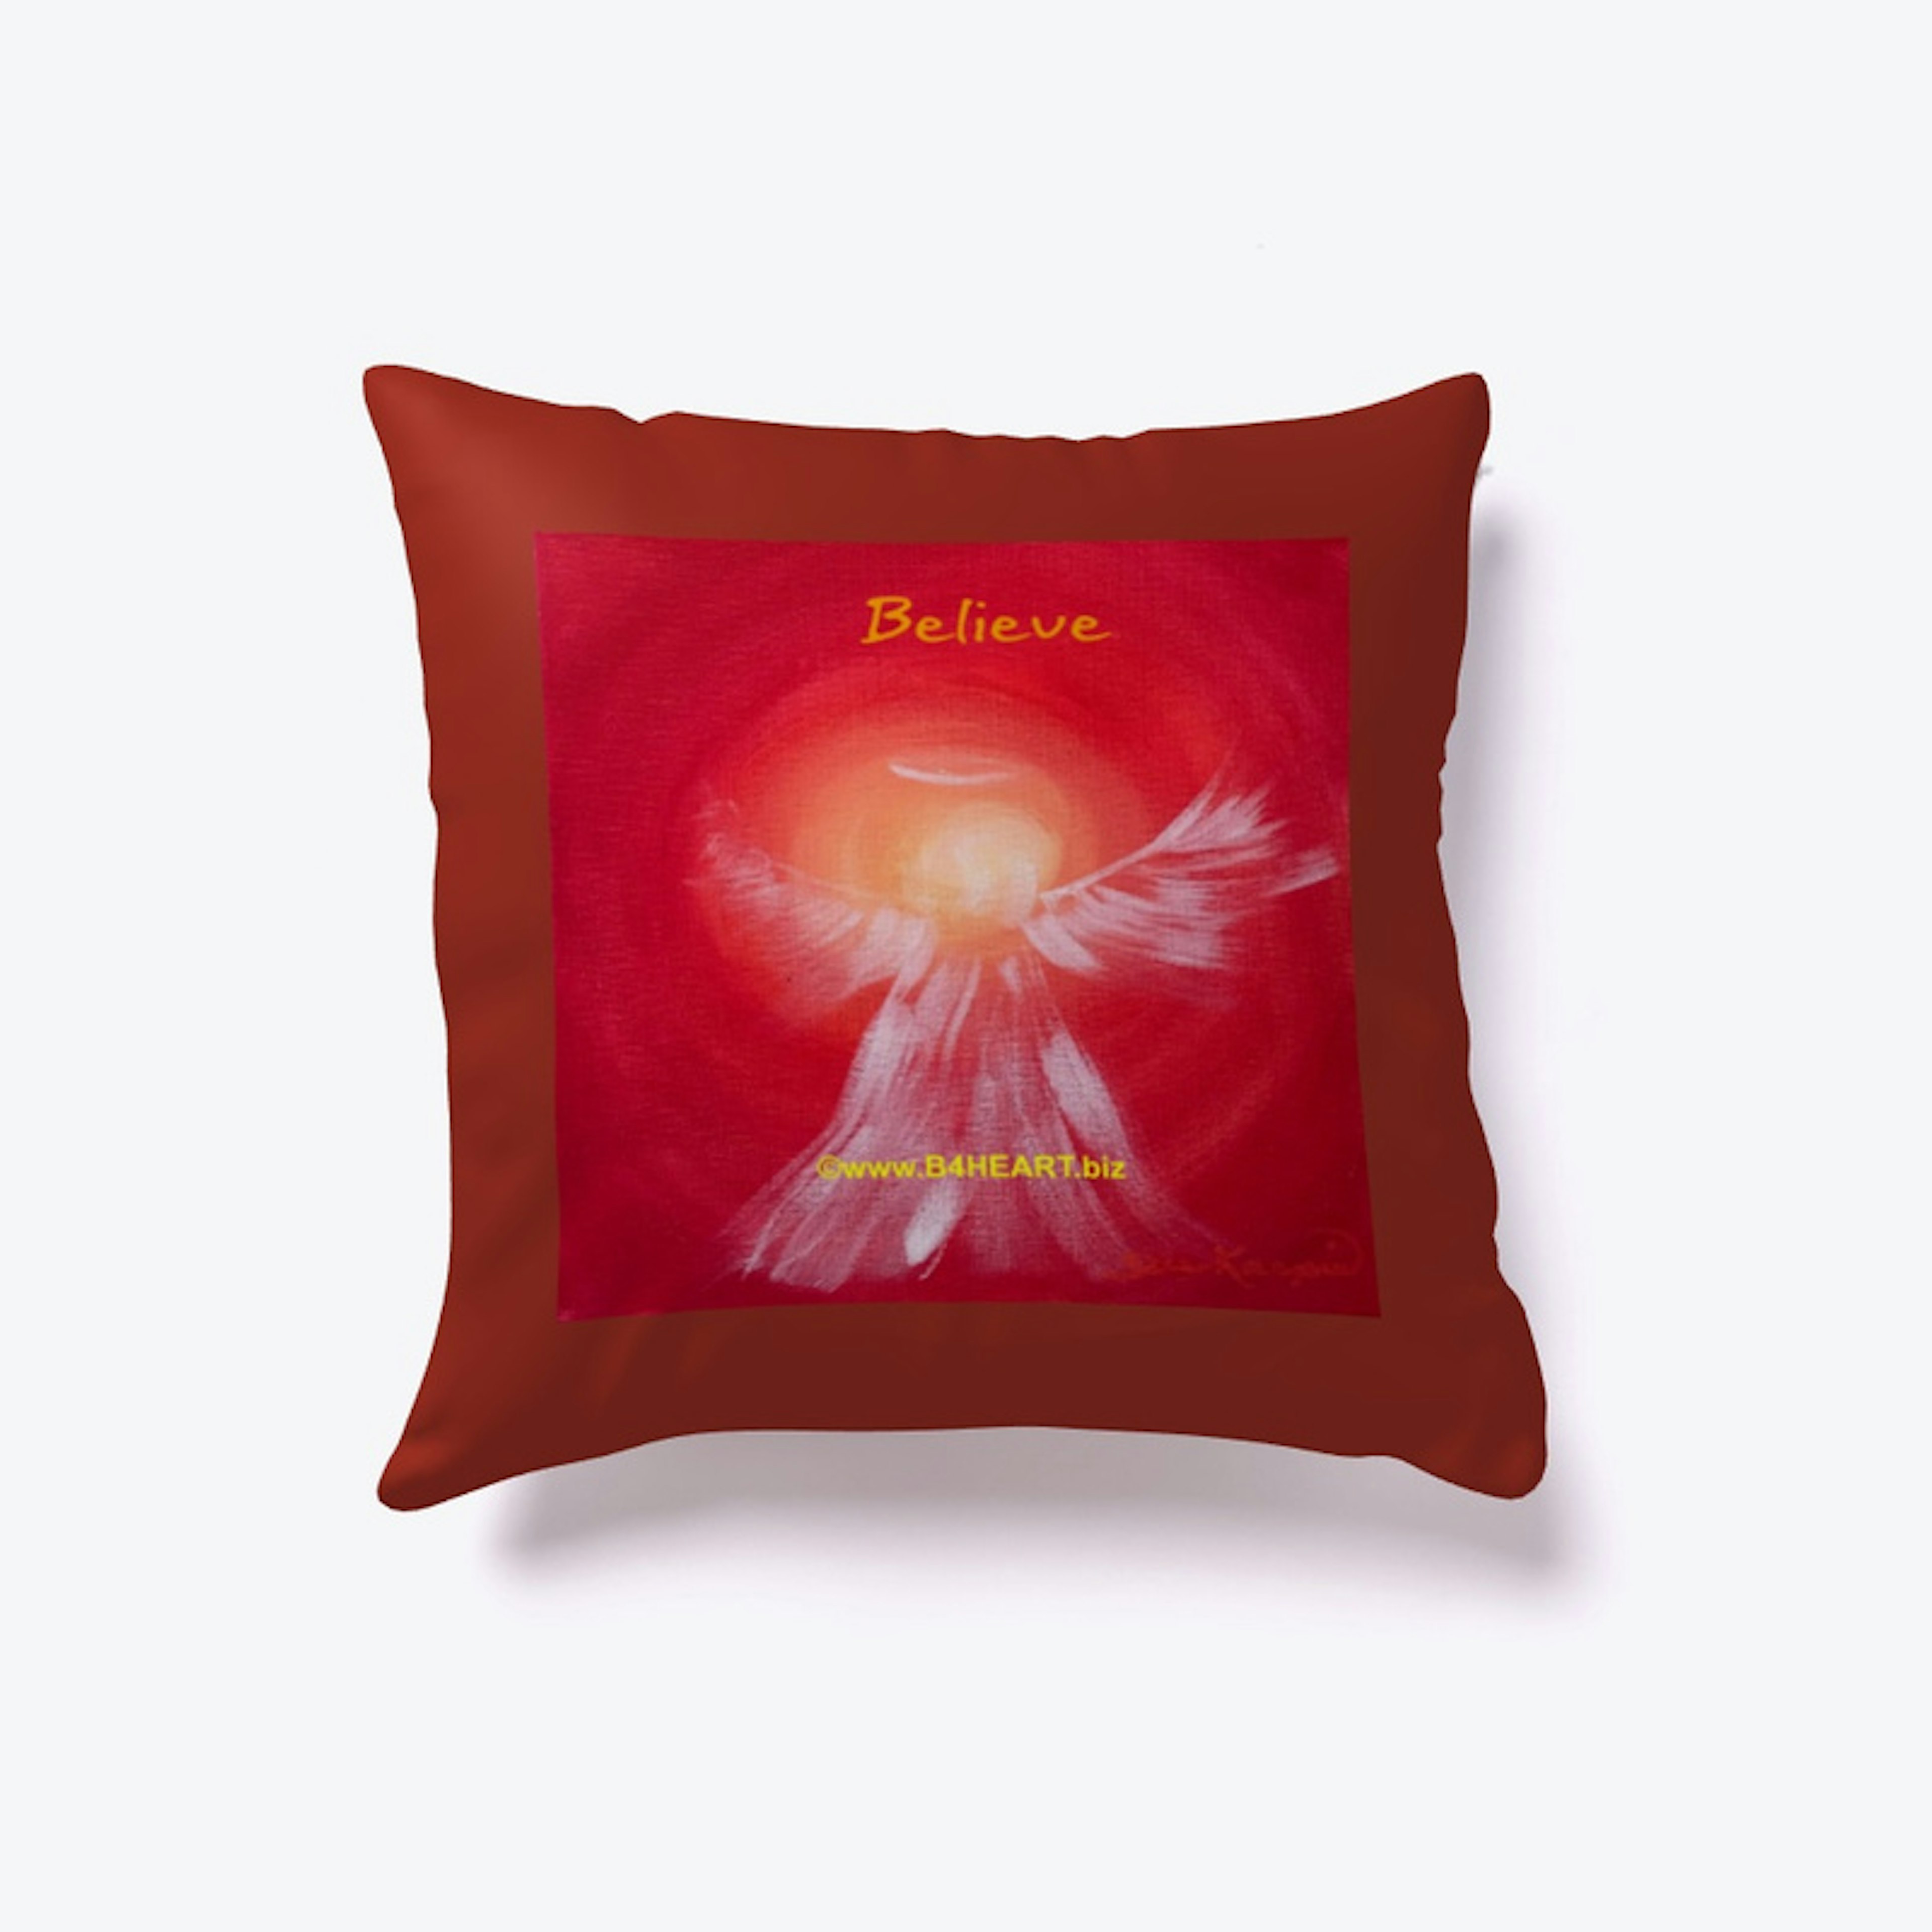 BELIEVE Pillows